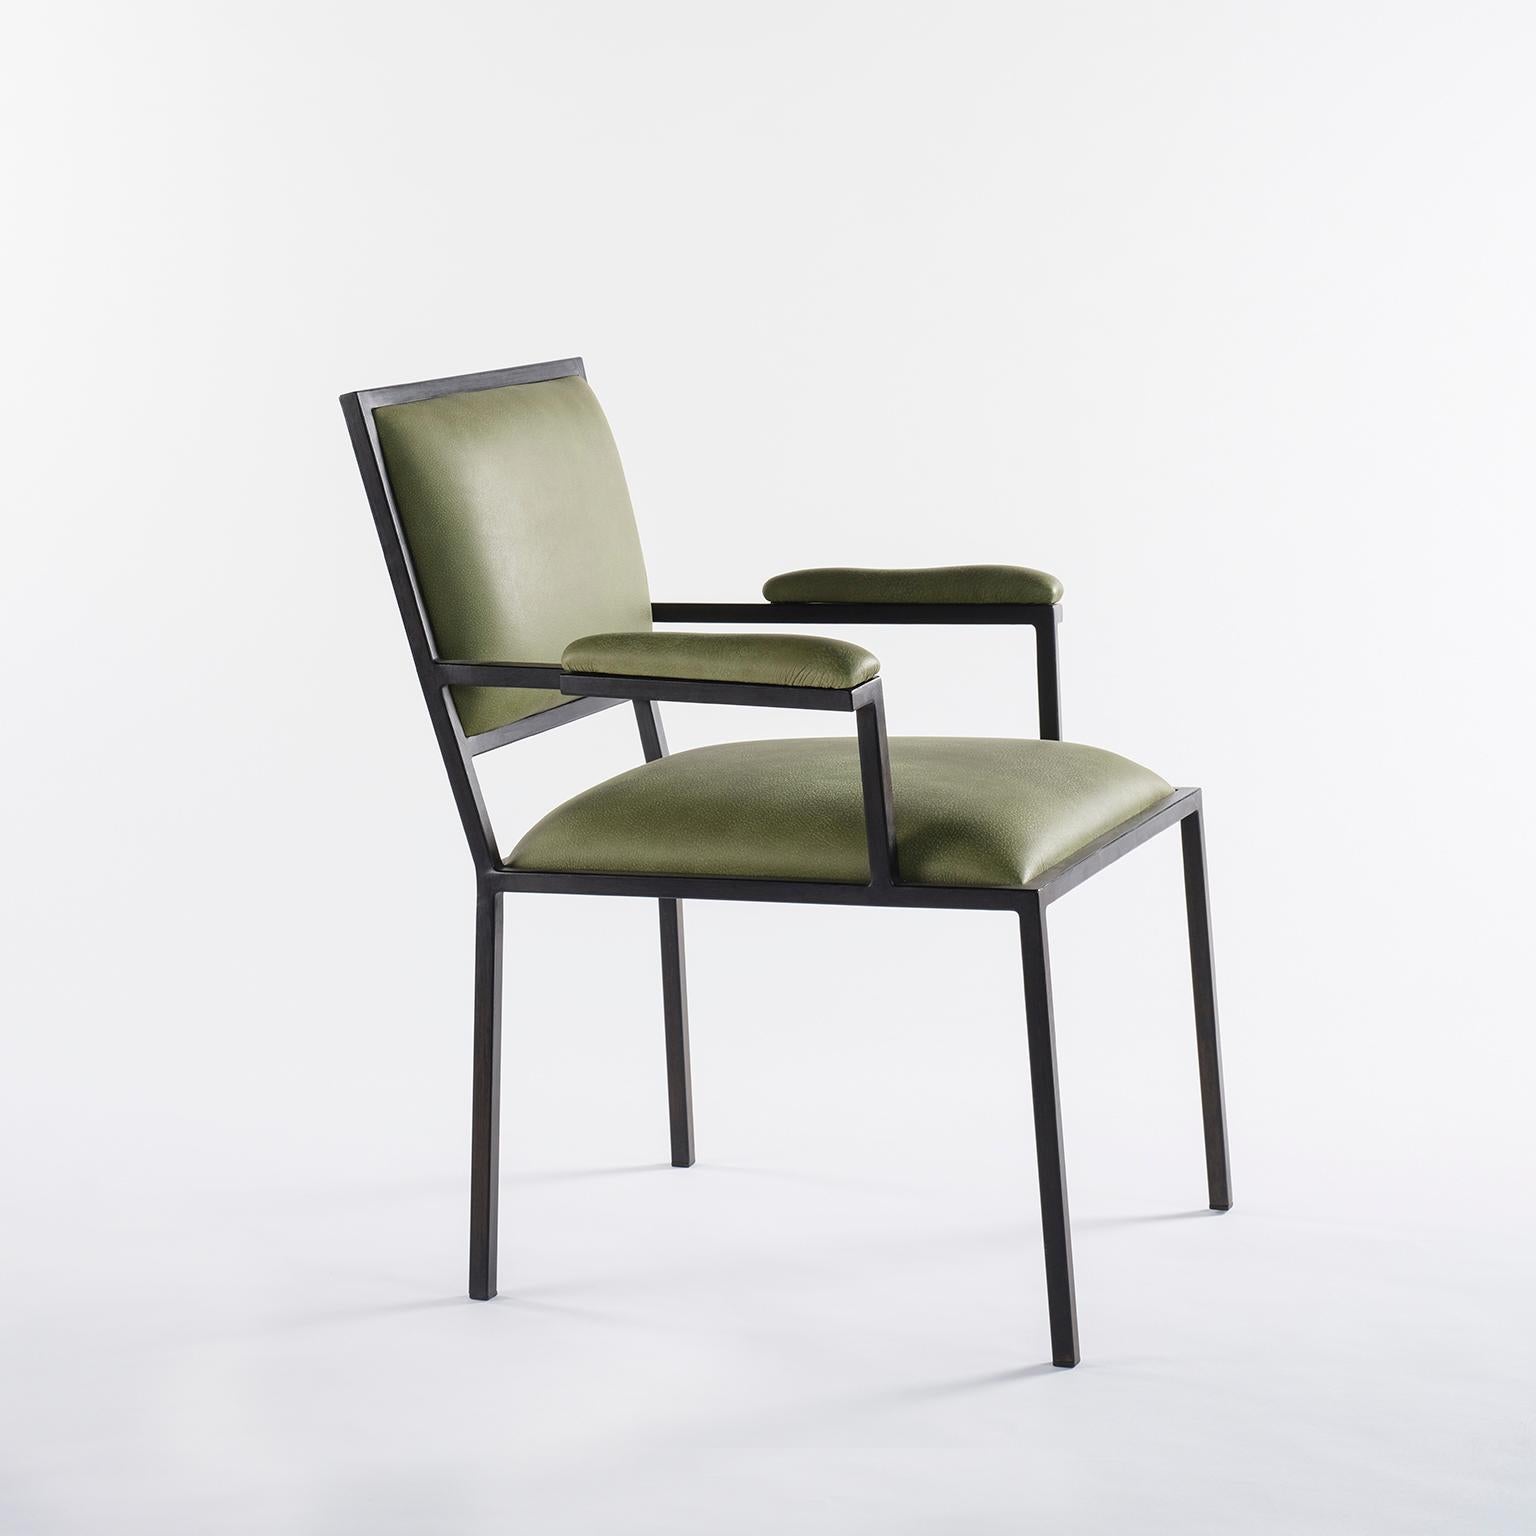 Für das Restaurant Alle Scuderie entworfener, mit Leder bezogener Sessel mit einfachem, linearem Gestell.
Dieses leichte Design ist in einer Vielzahl von italienischen Ledersorten erhältlich und lässt sich sehr gut mit klassischen und modernen